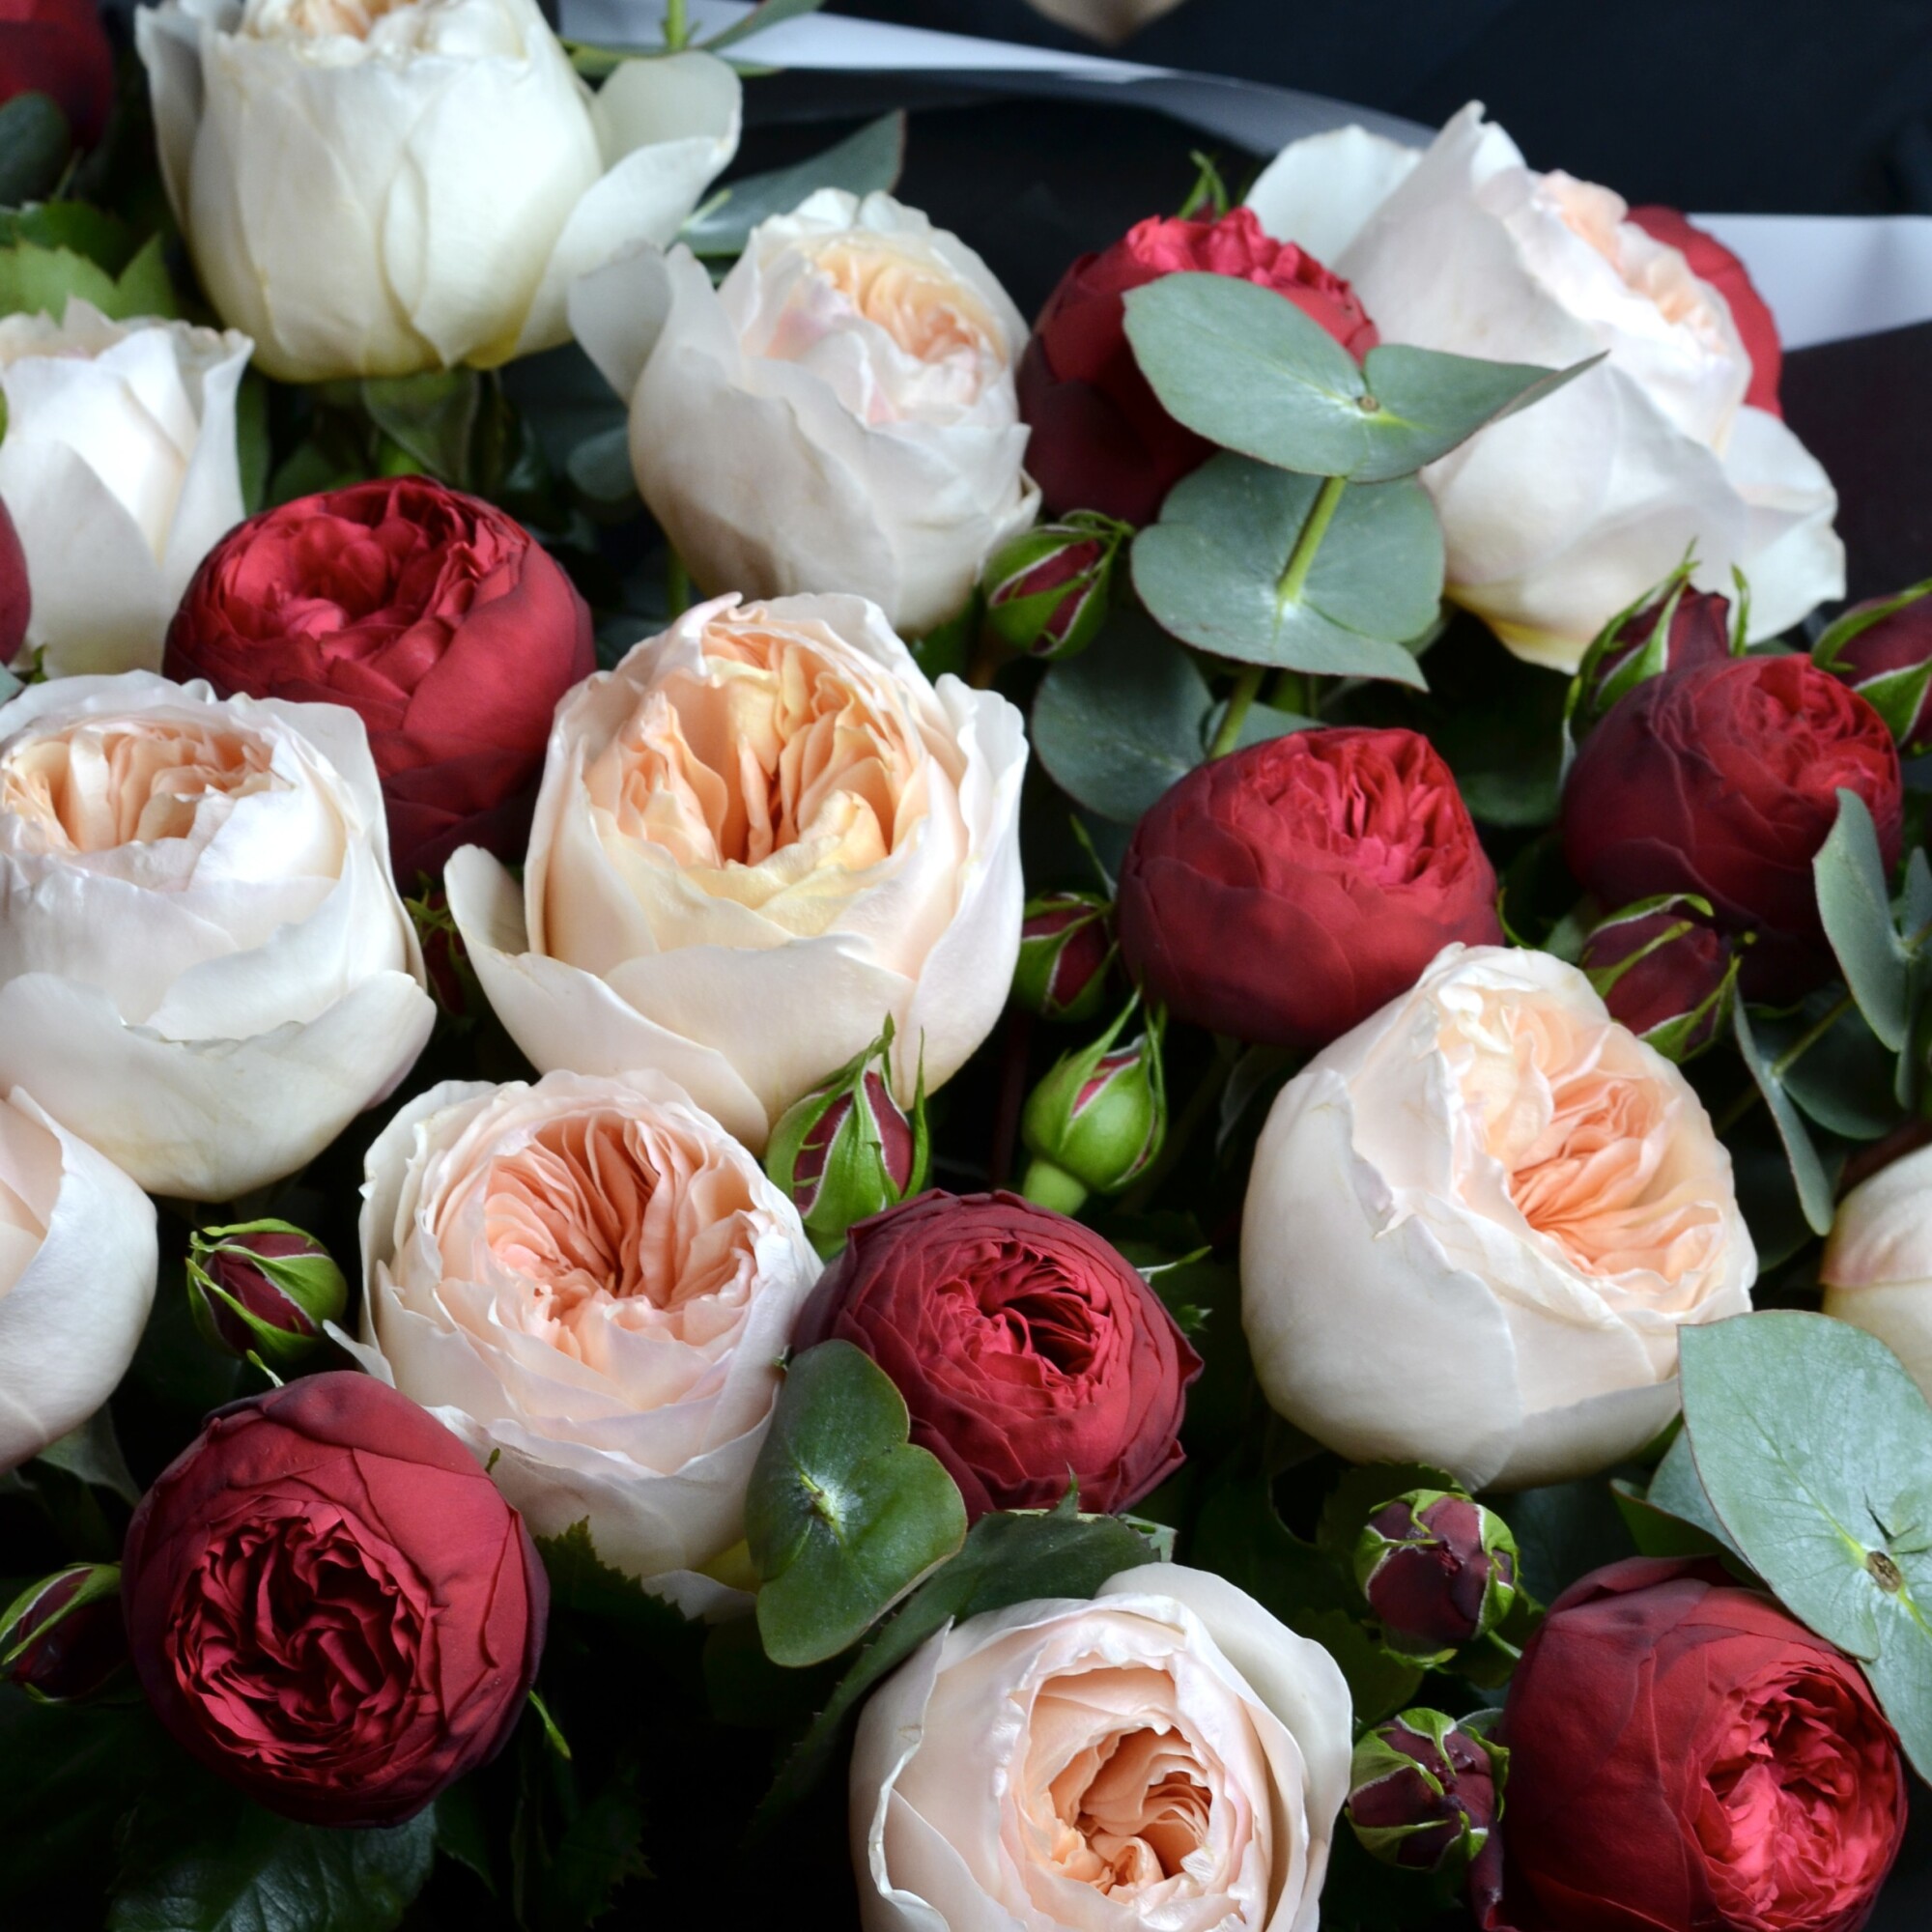 Пионовидные розы Ред Пиано и Джульетта 27 шт с эвкалиптом